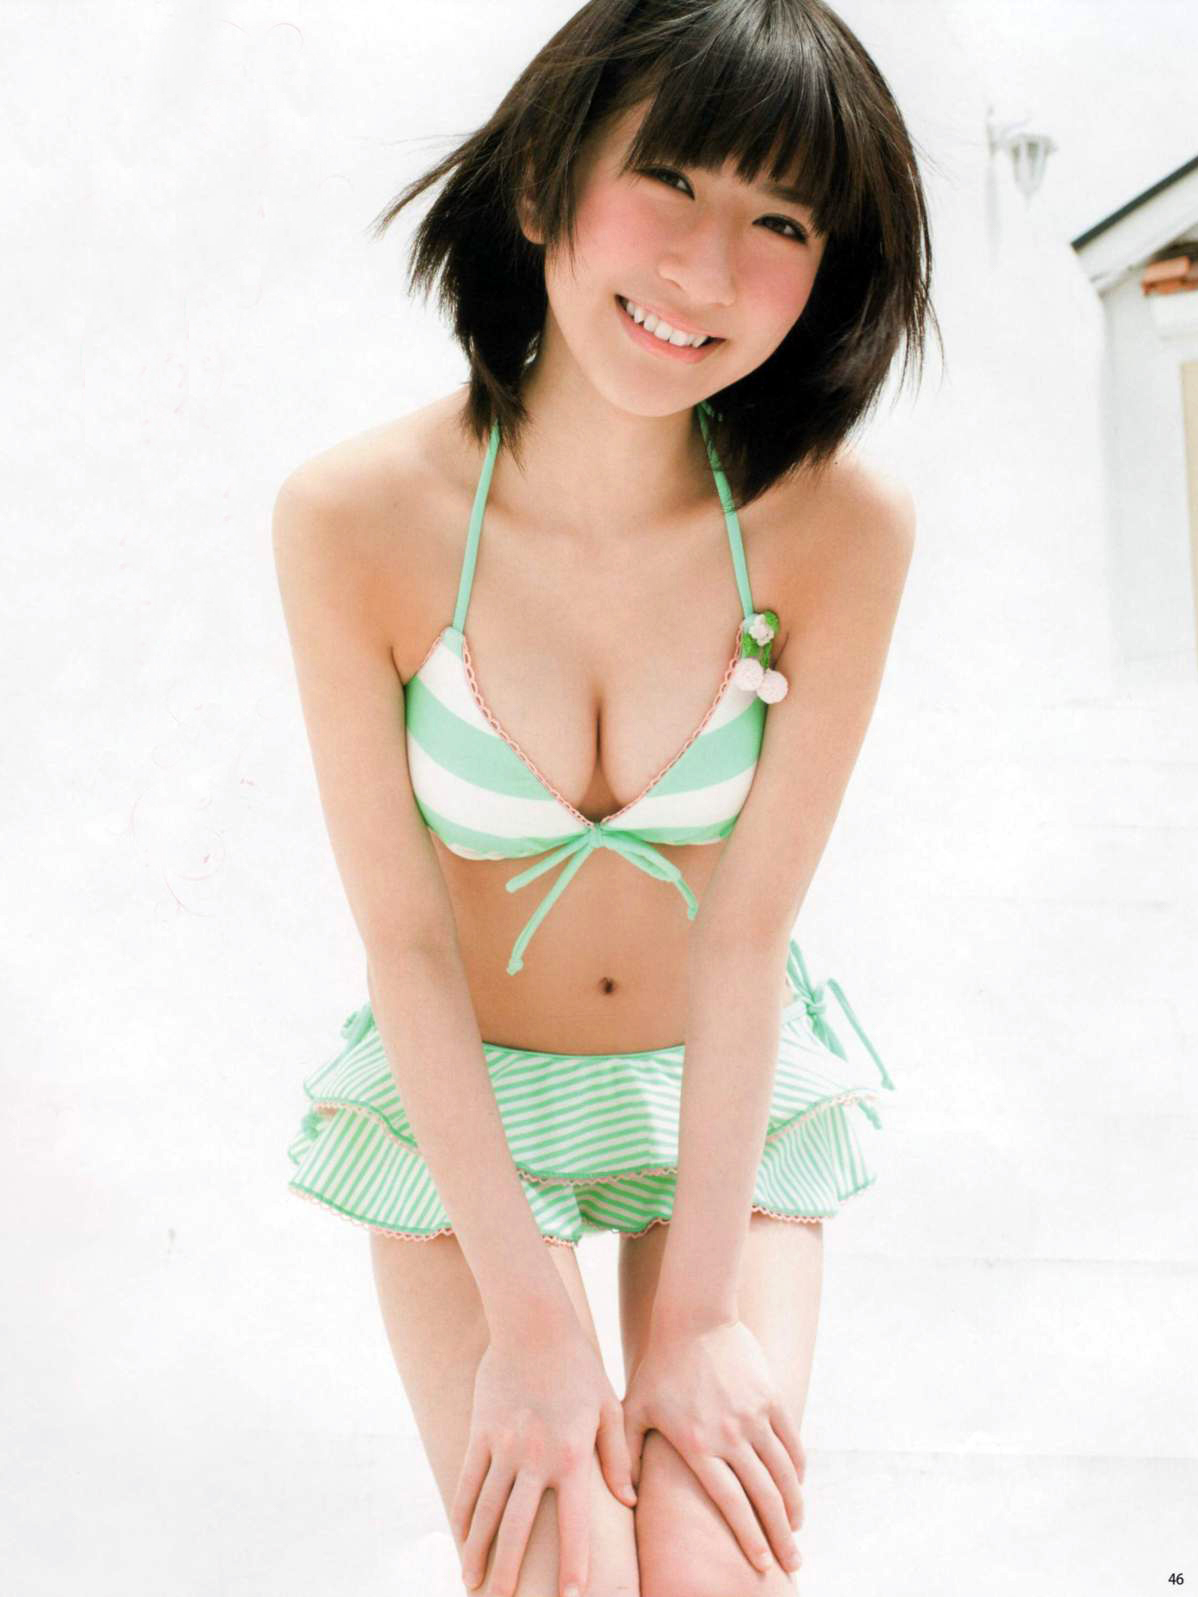 グリーンの水着がよく似合う石田晴香